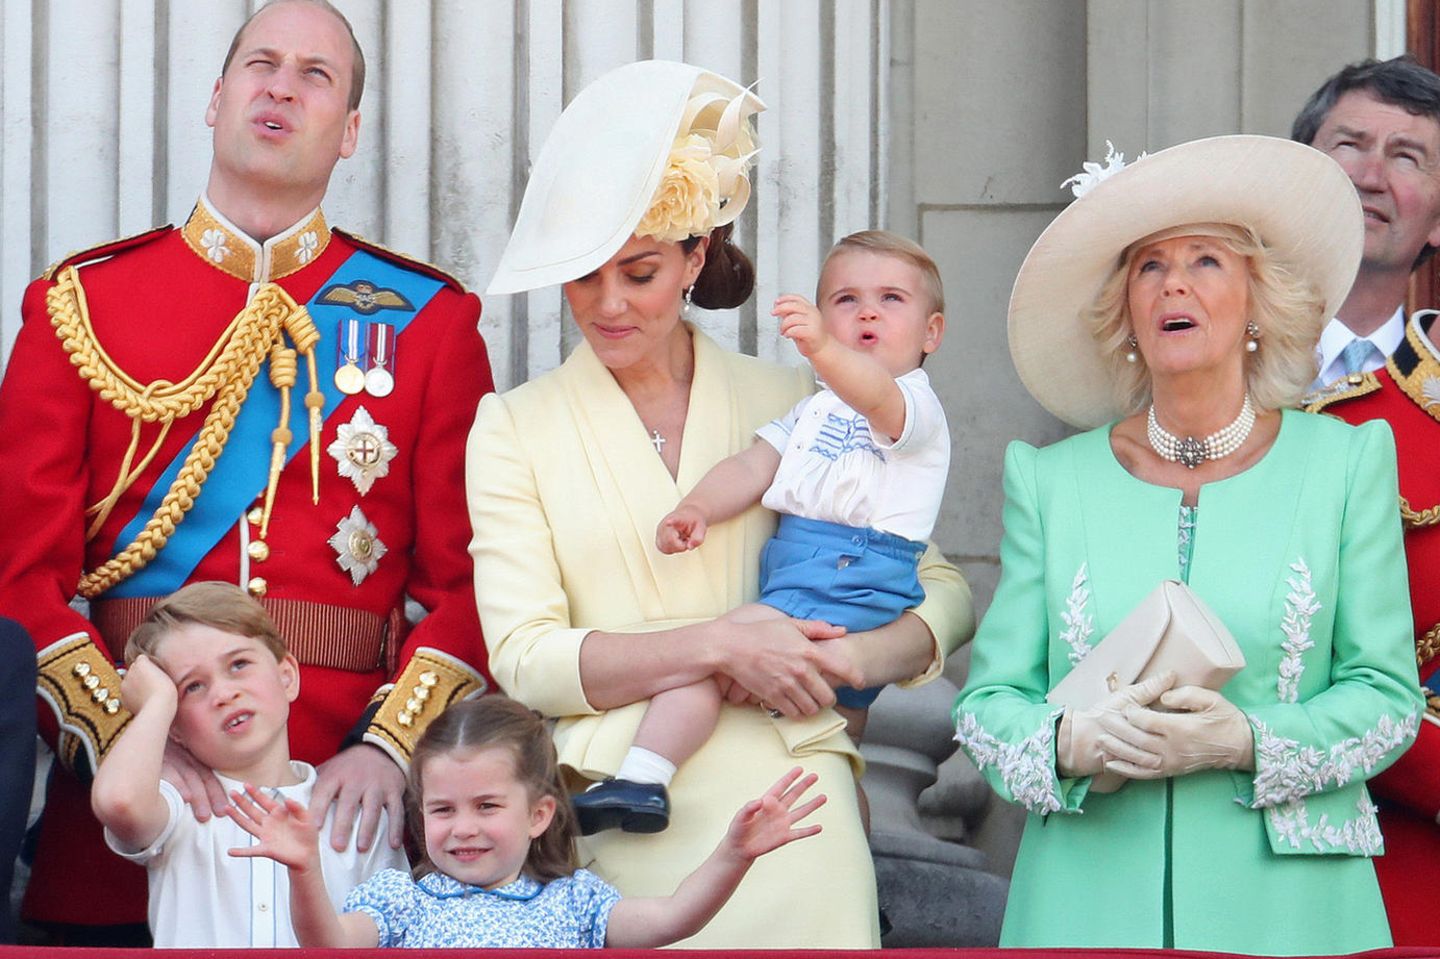 Neues Foto der Royal-Kinder aufgetaucht – und es ist soooo süß!